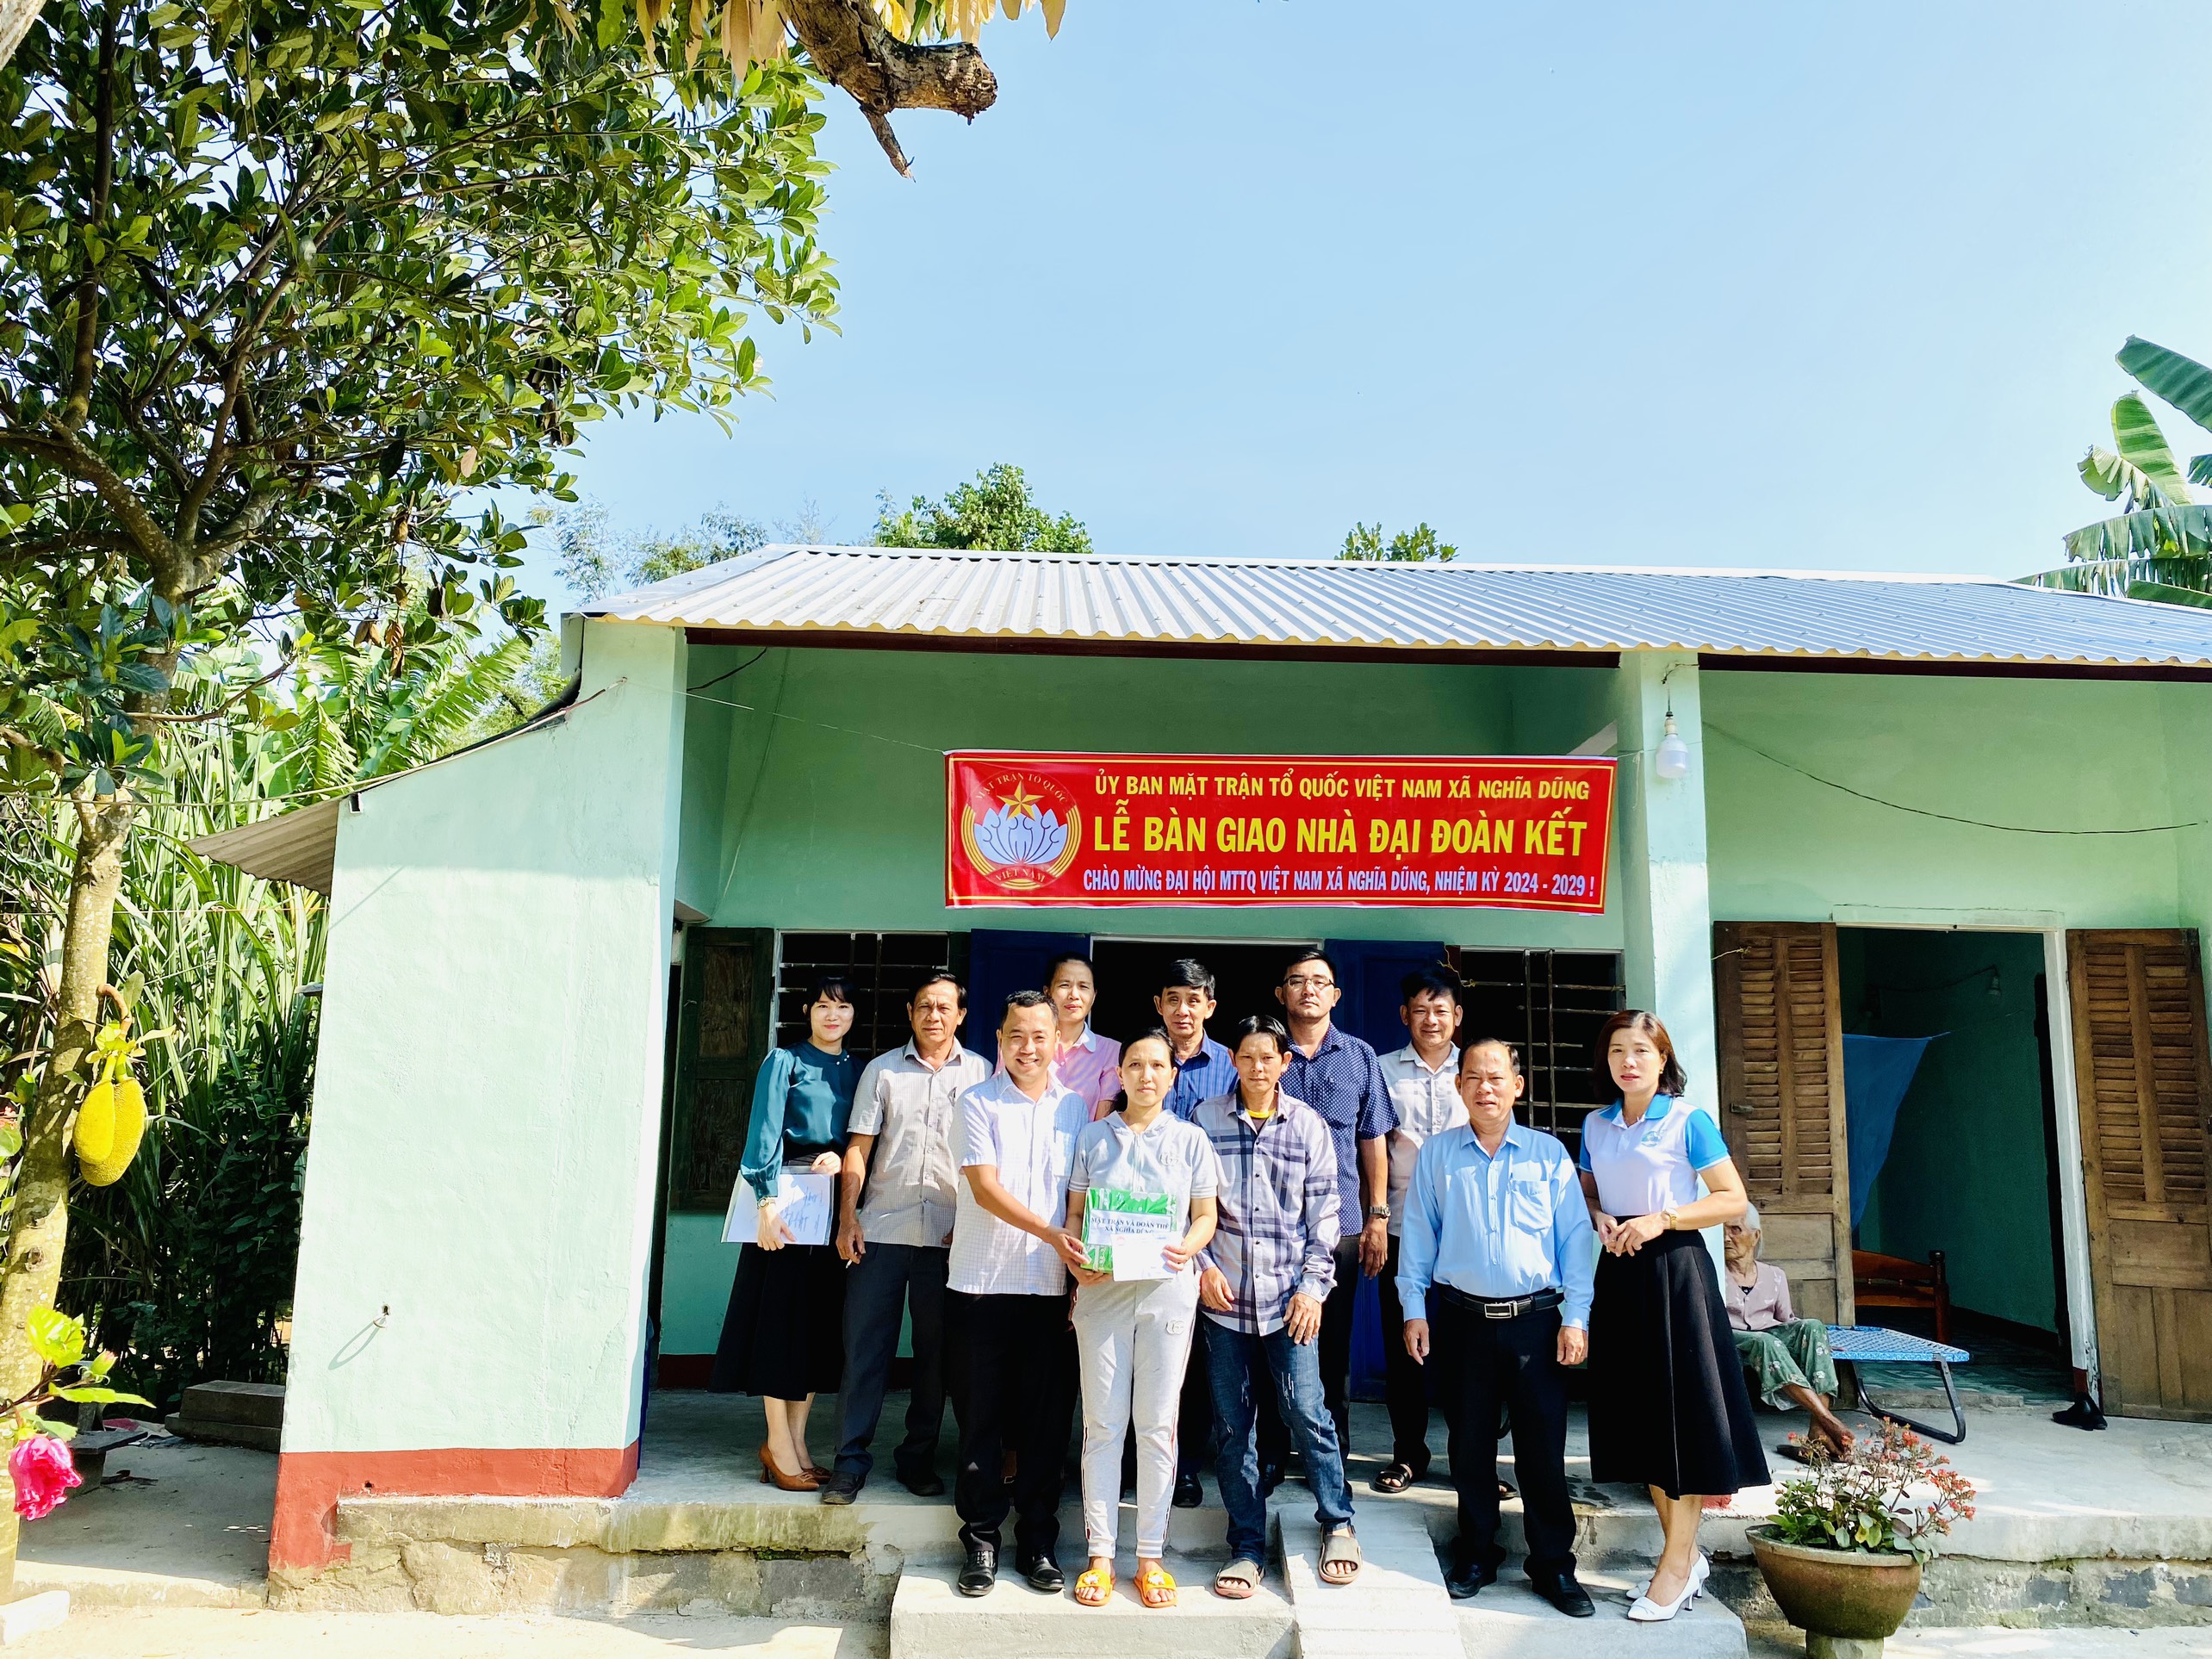 Uỷ ban MTTQ Việt Nam xã Nghĩa Dũng tổ chức bàn giao nhà đại đoàn kết cho hộ nghèo